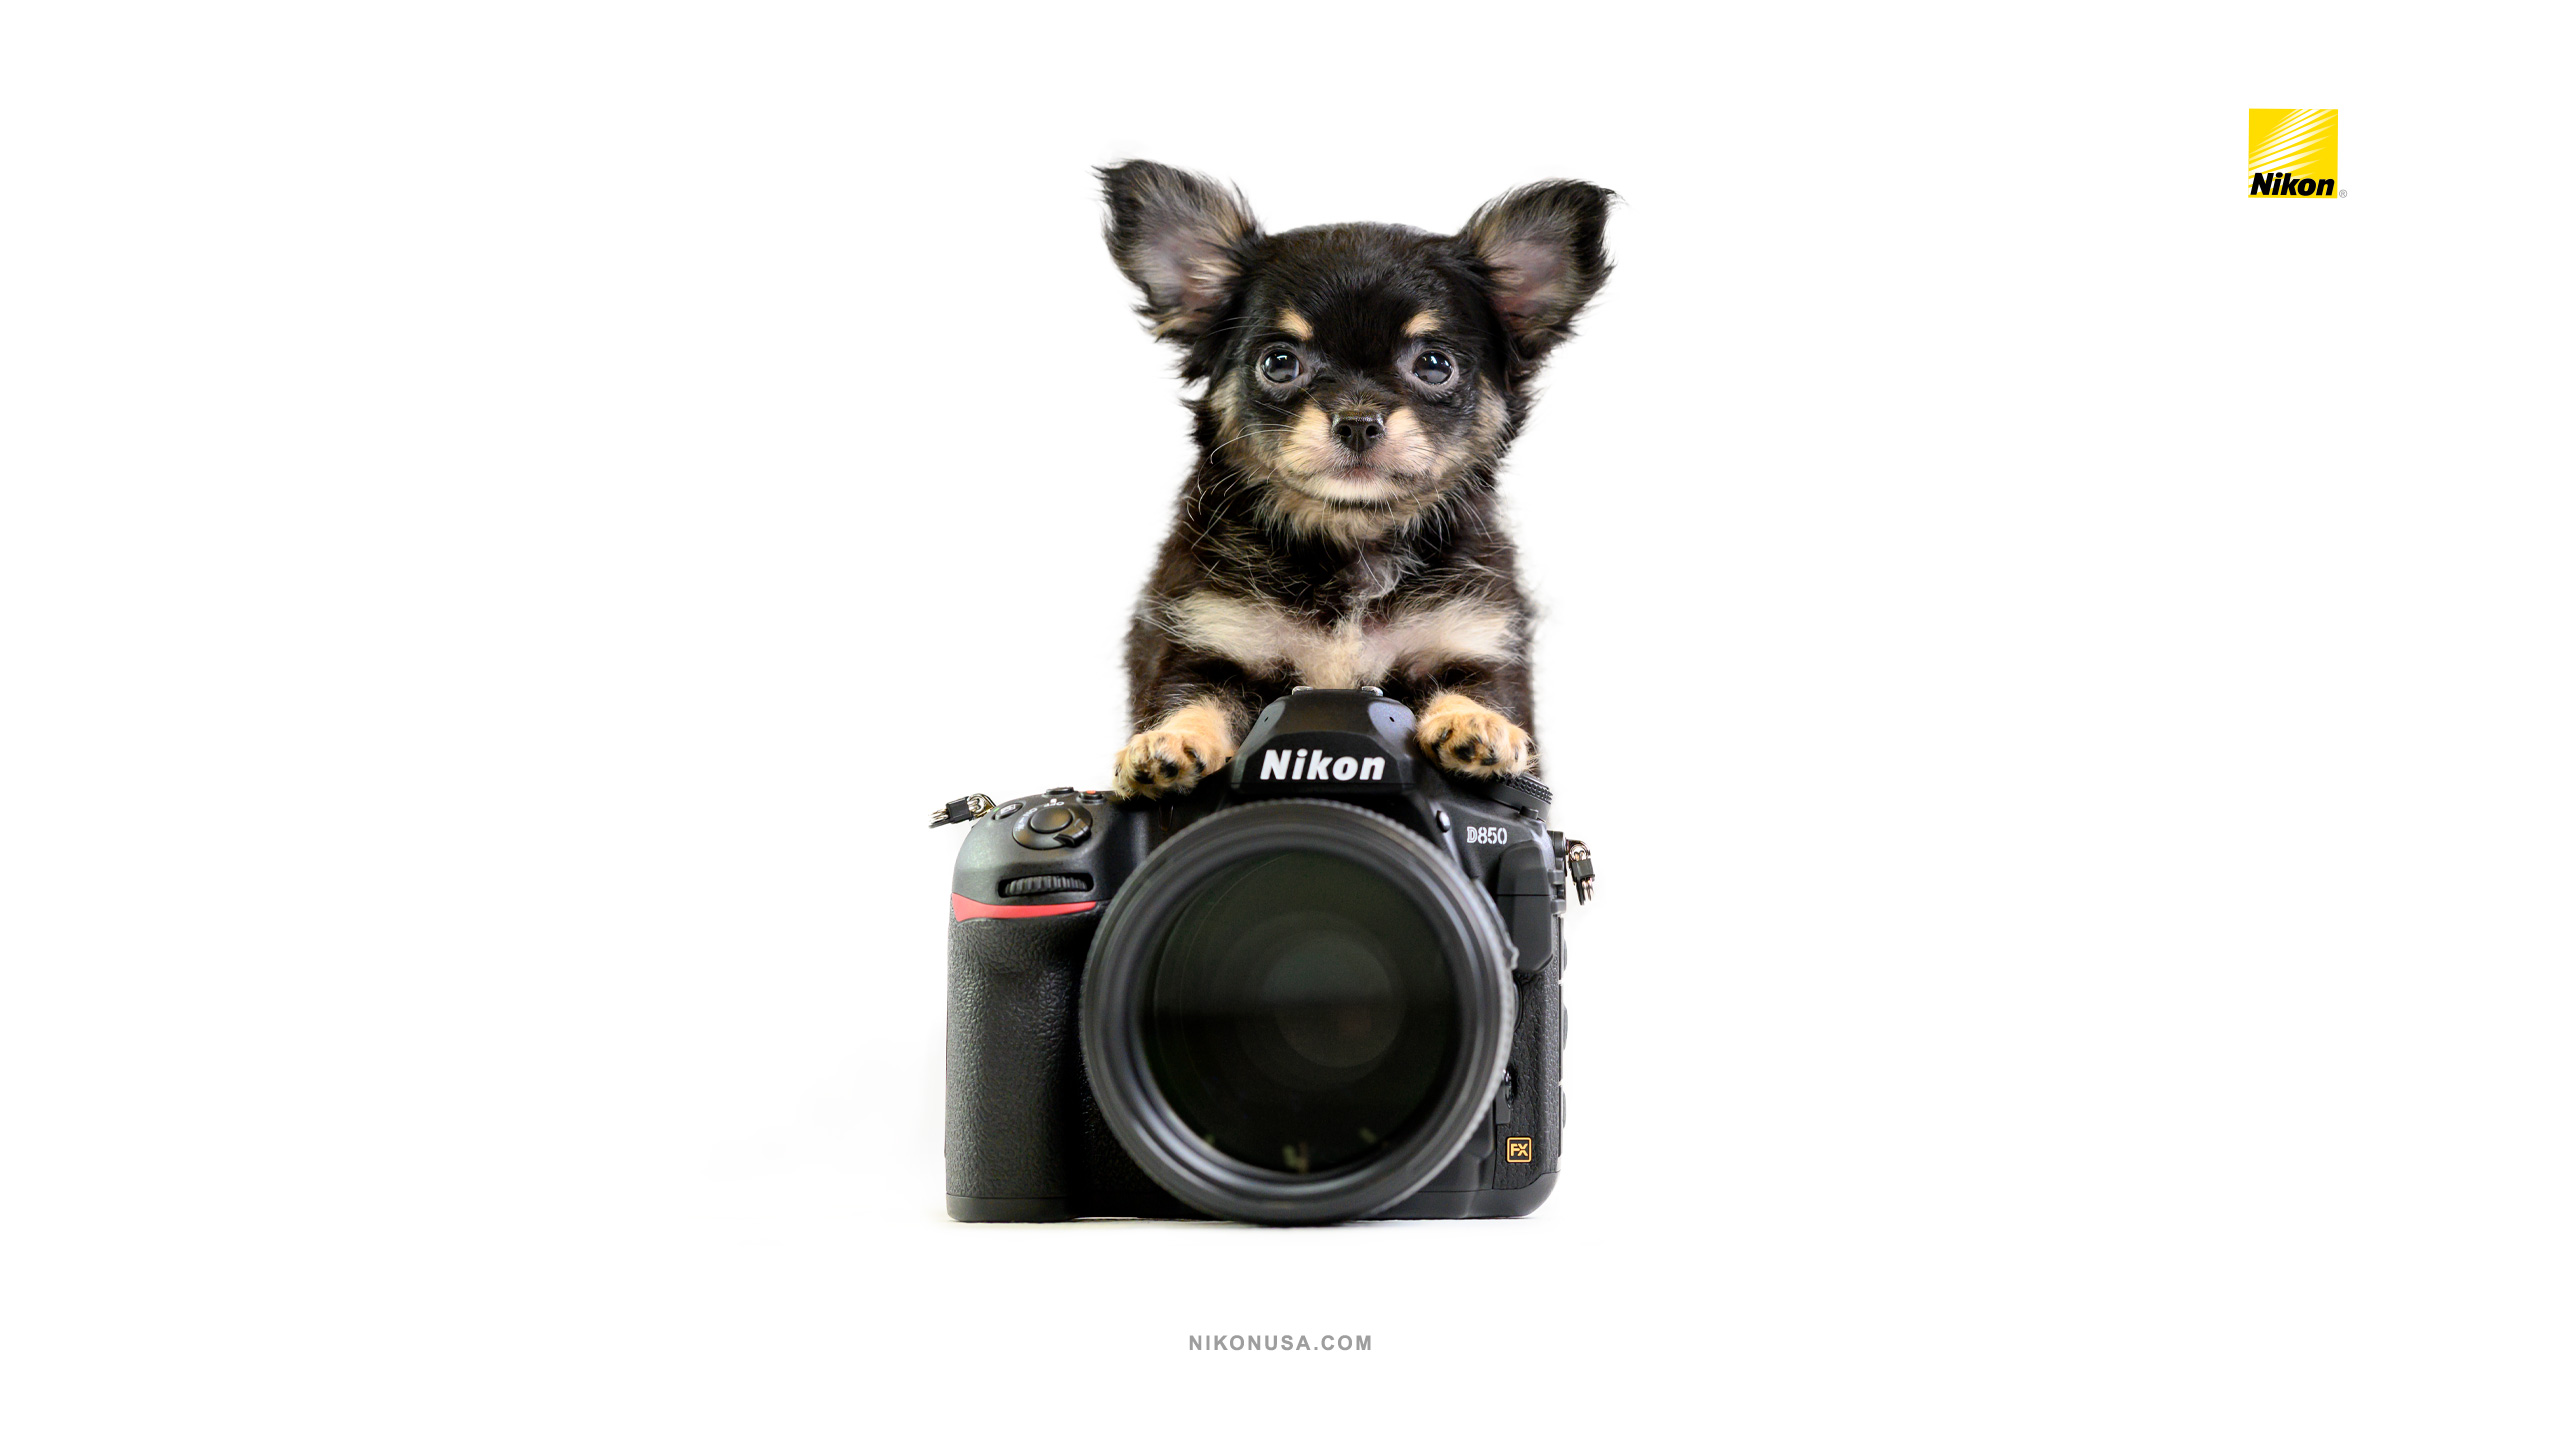 Tamara Lackey Nikon Gear and Puppies